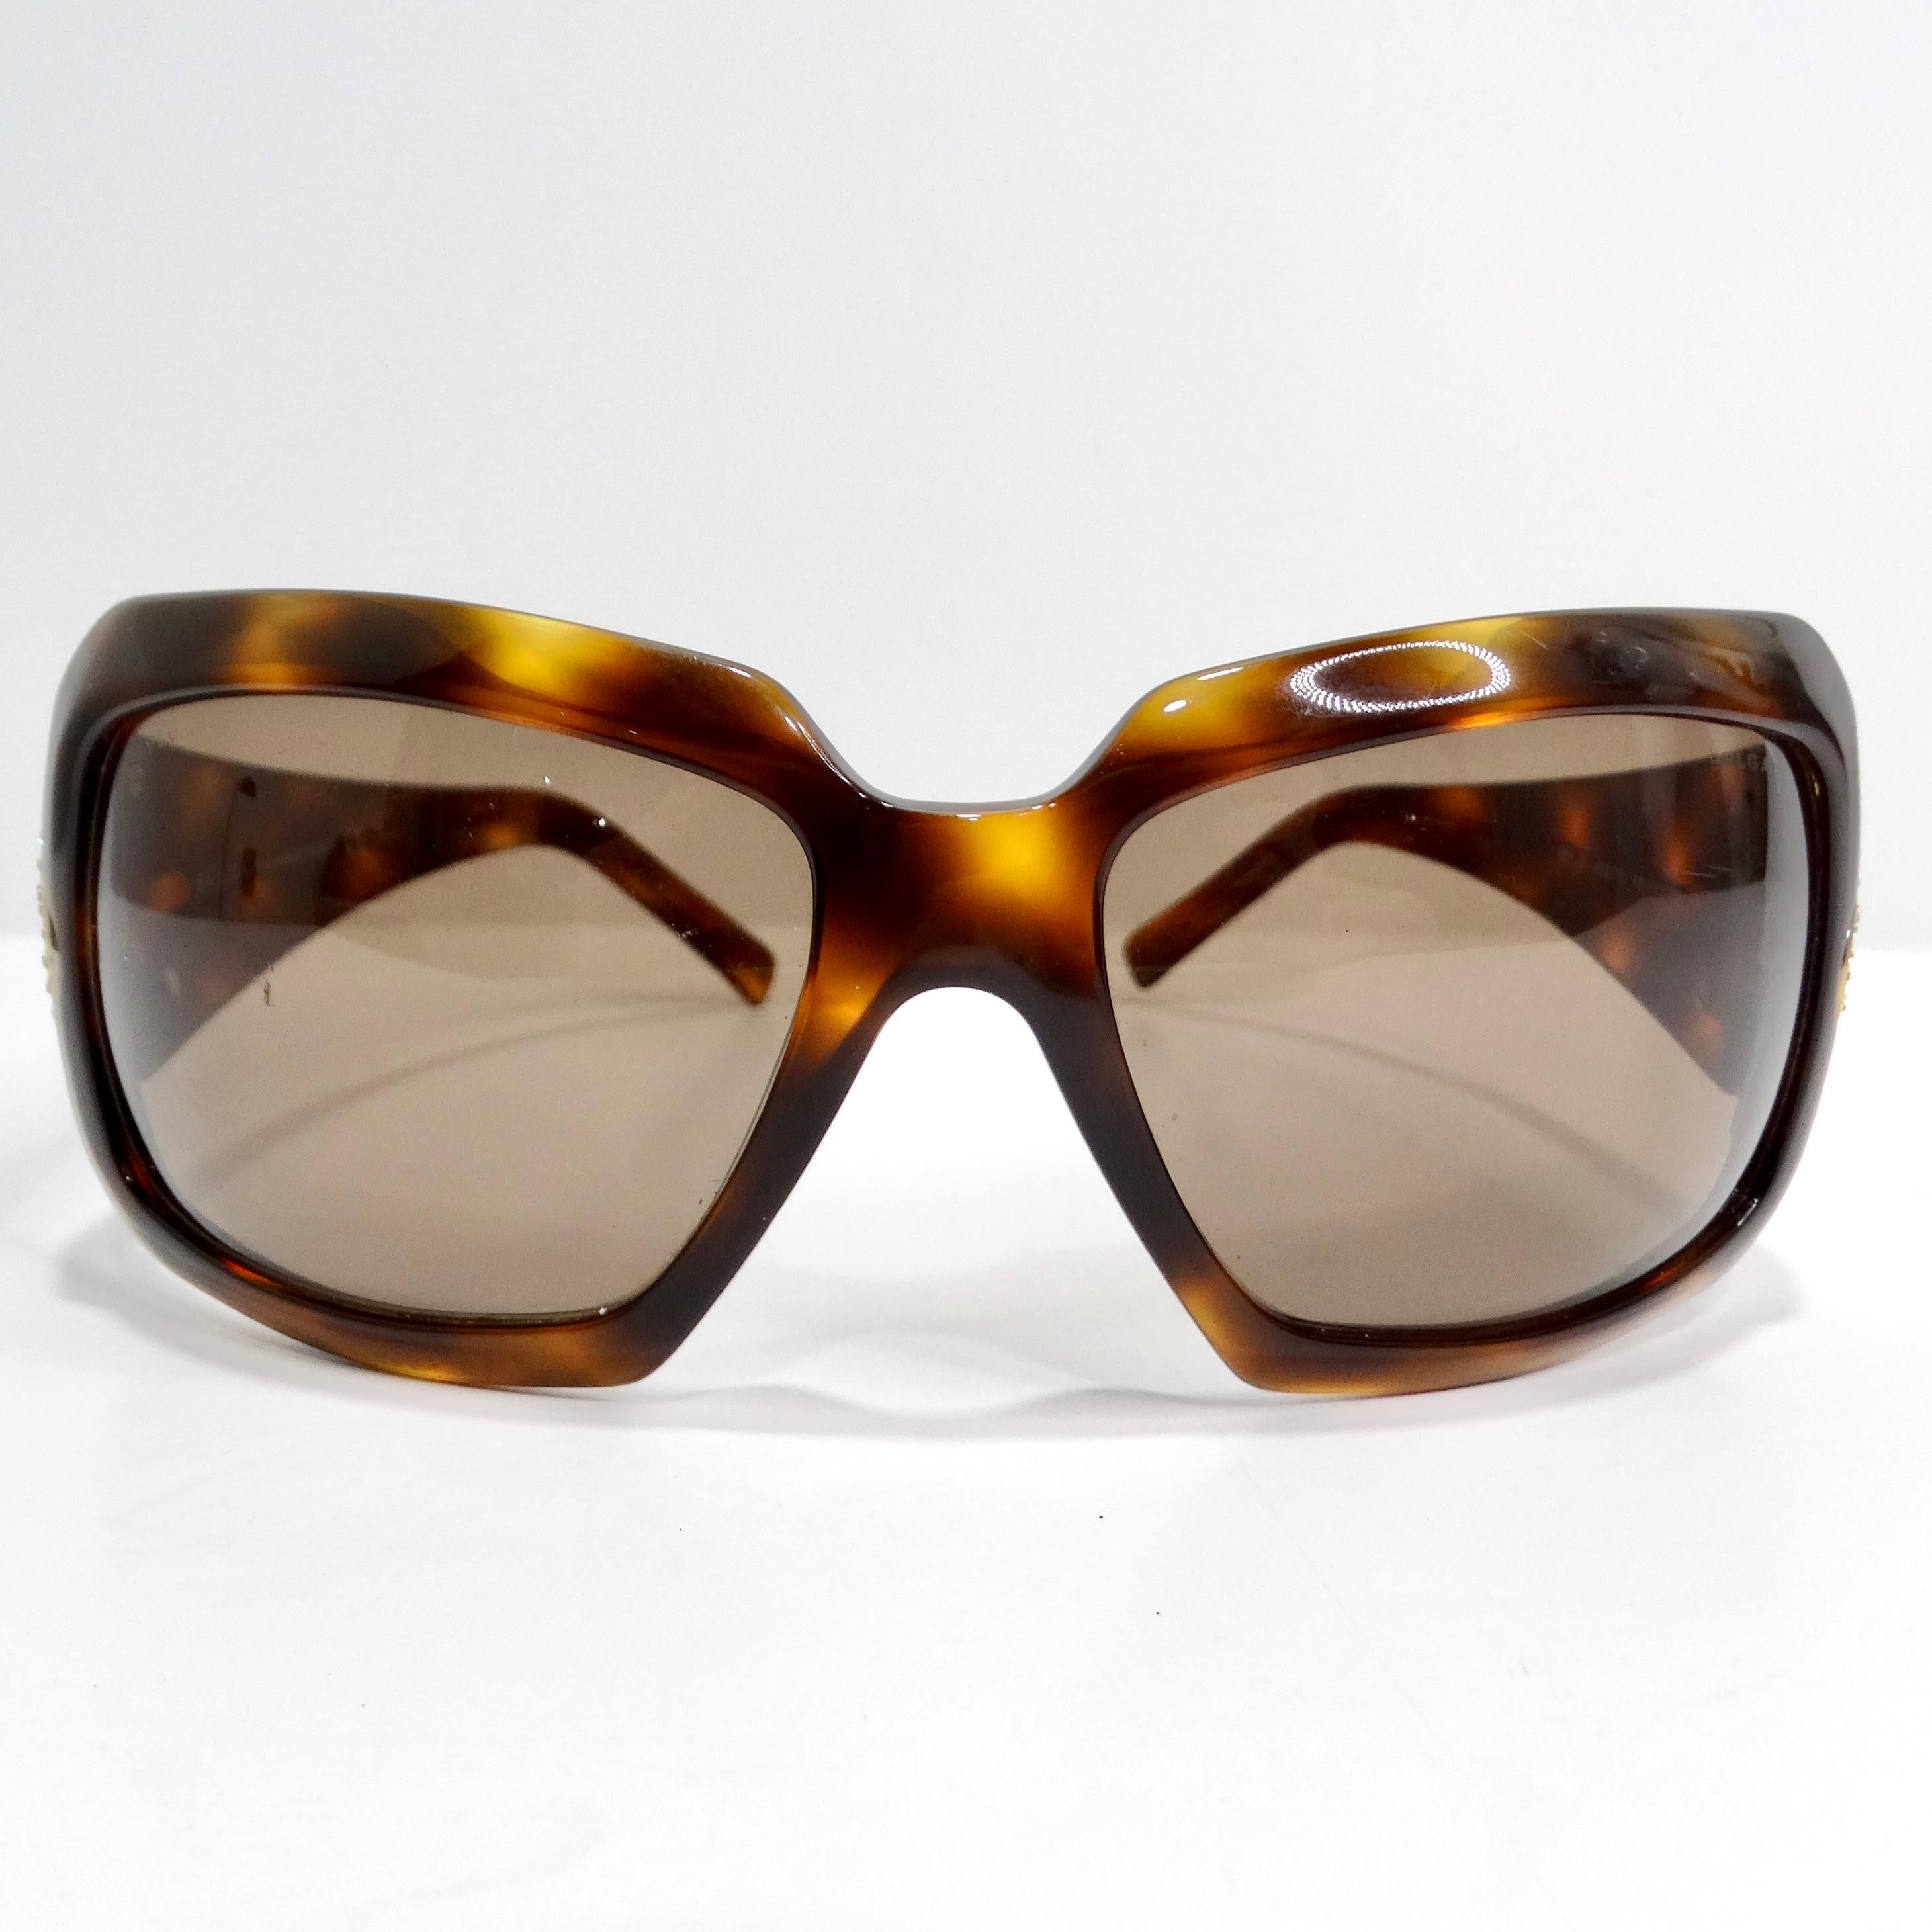 Die Y2K Schildpatt-Sonnenbrille von Bulgari ist eine perfekte Mischung aus klassischem Stil und luxuriösem Glamour. Diese raffinierte Sonnenbrille mit zeitlosem braunen Schildpattmuster und schlankem rechteckigen Rahmen ist eine vielseitige